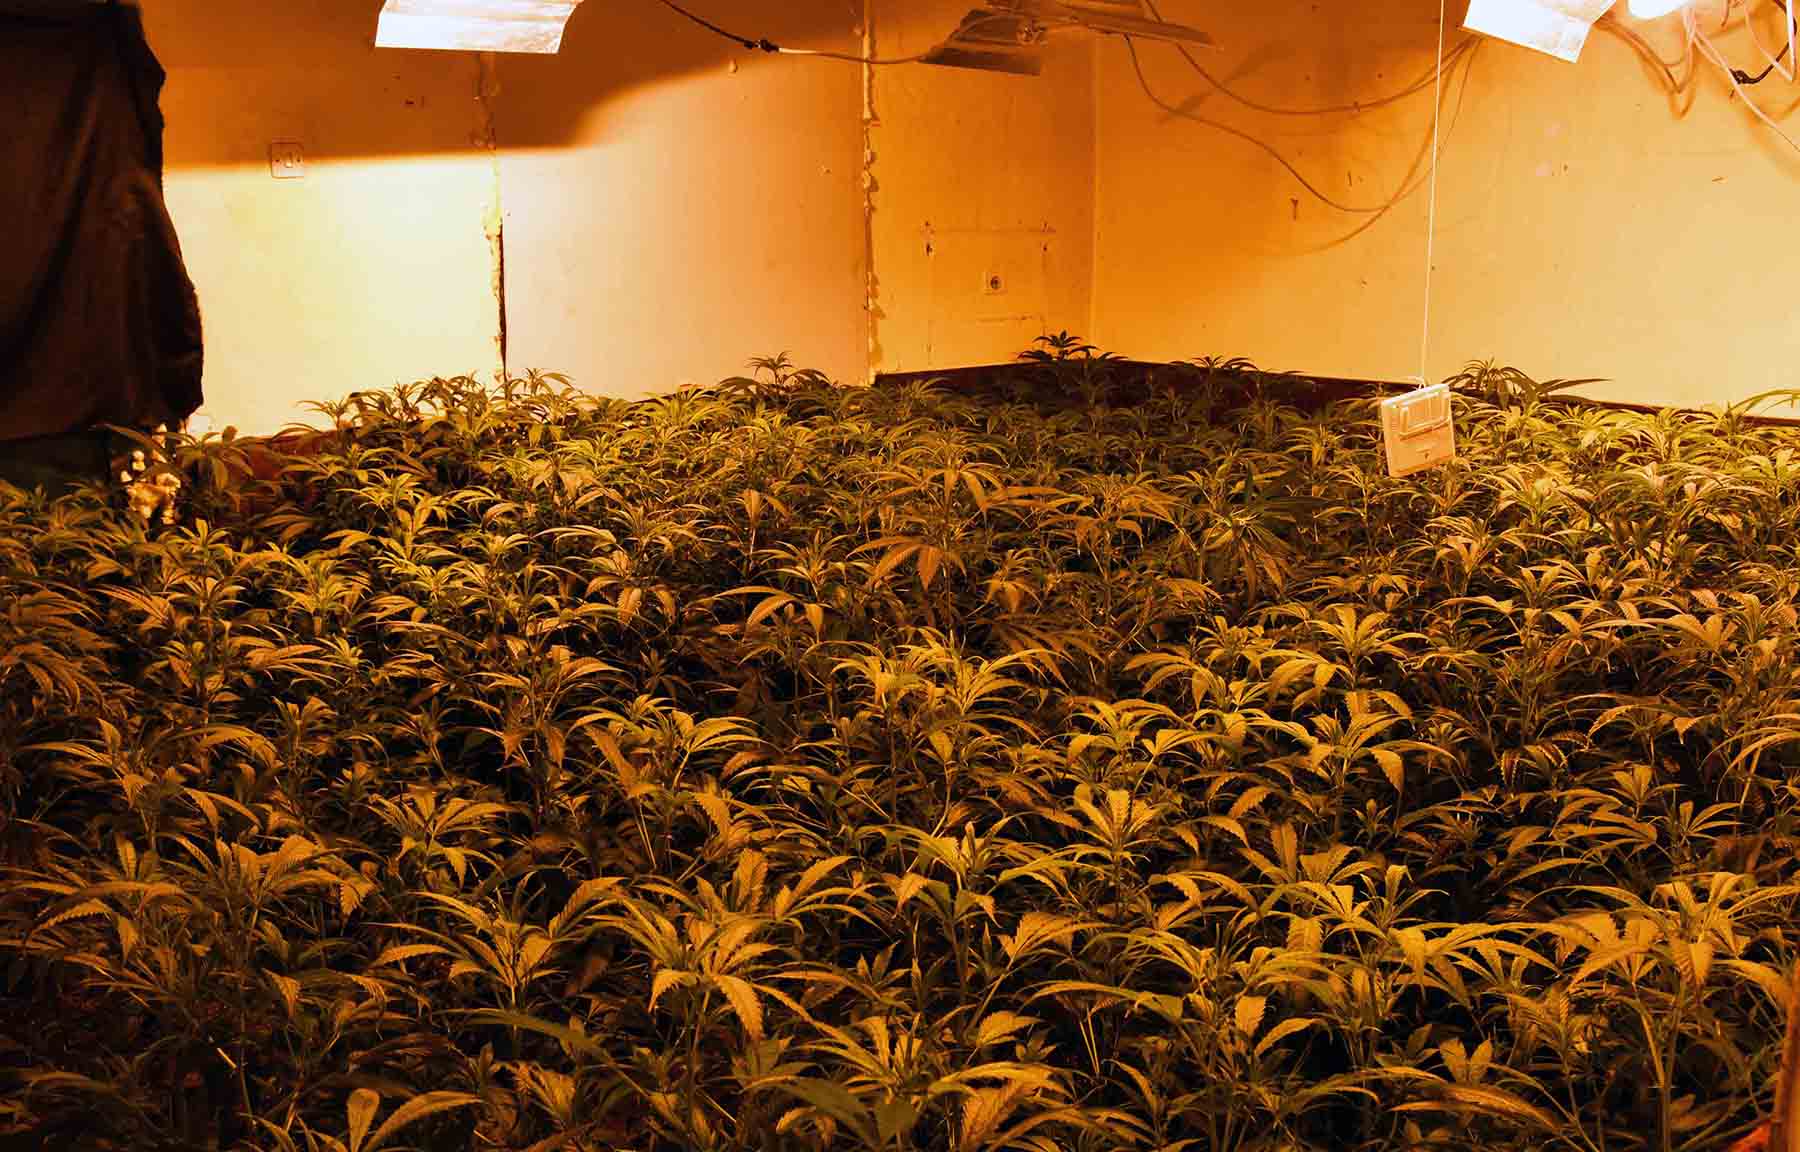 Otkrivena laboratorija za uzgoj marihuane i uhapšeni osumnjičeni